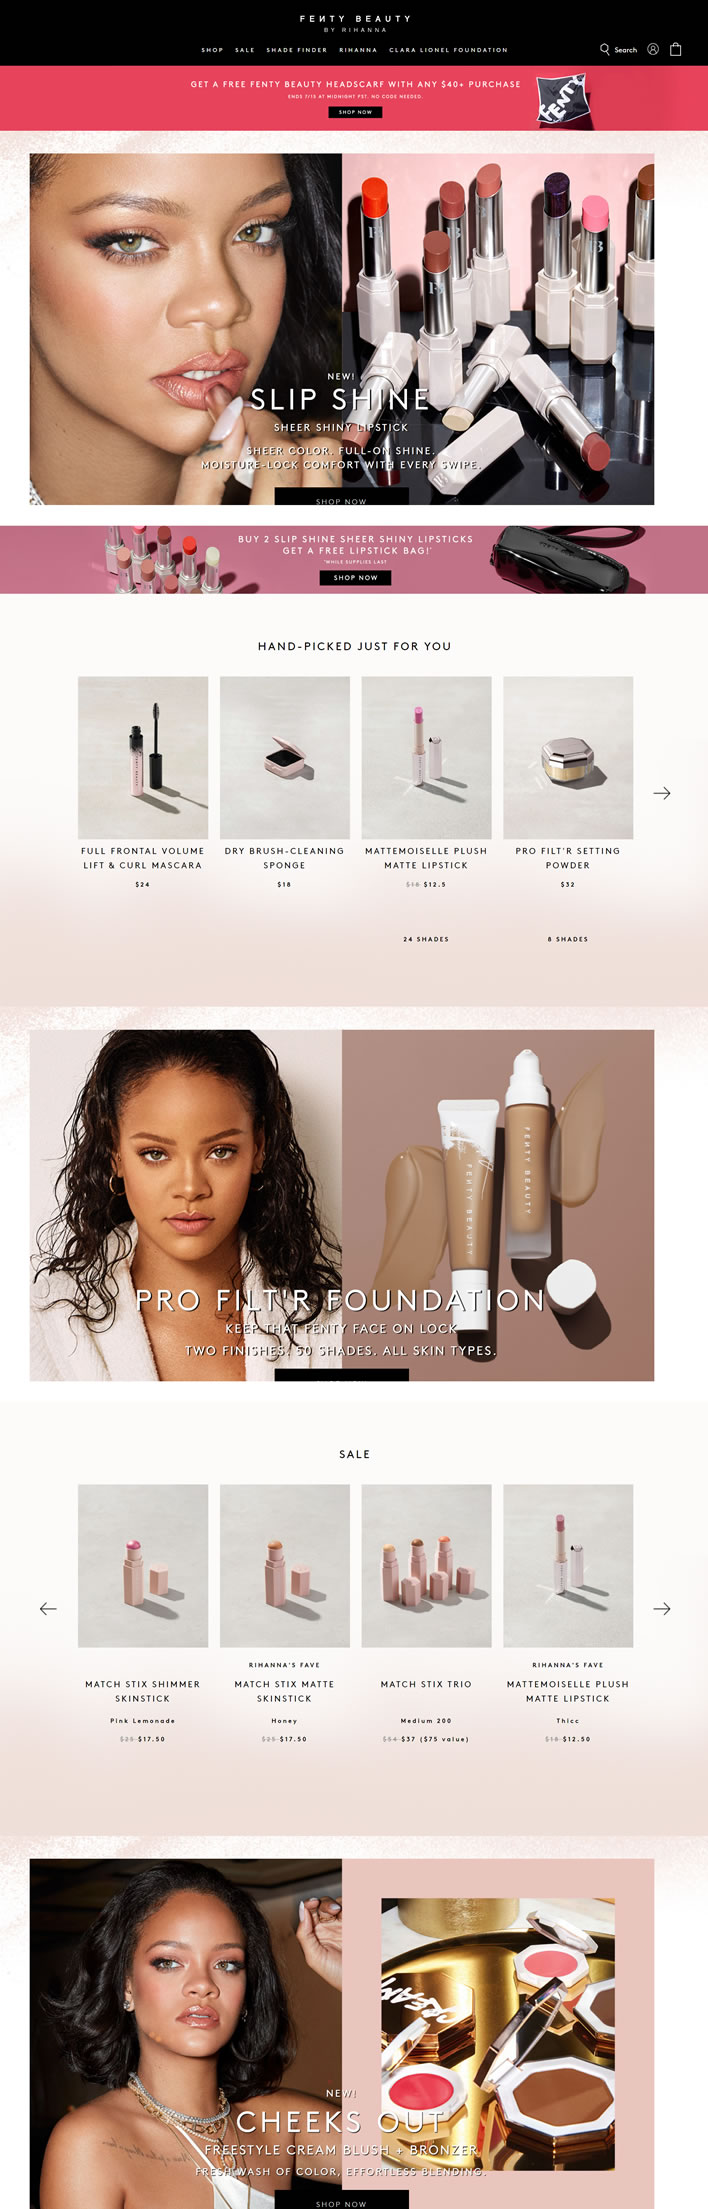 Fenty Beauty官網：蕾哈娜創立的美妝品牌美國購物網站MeetKK